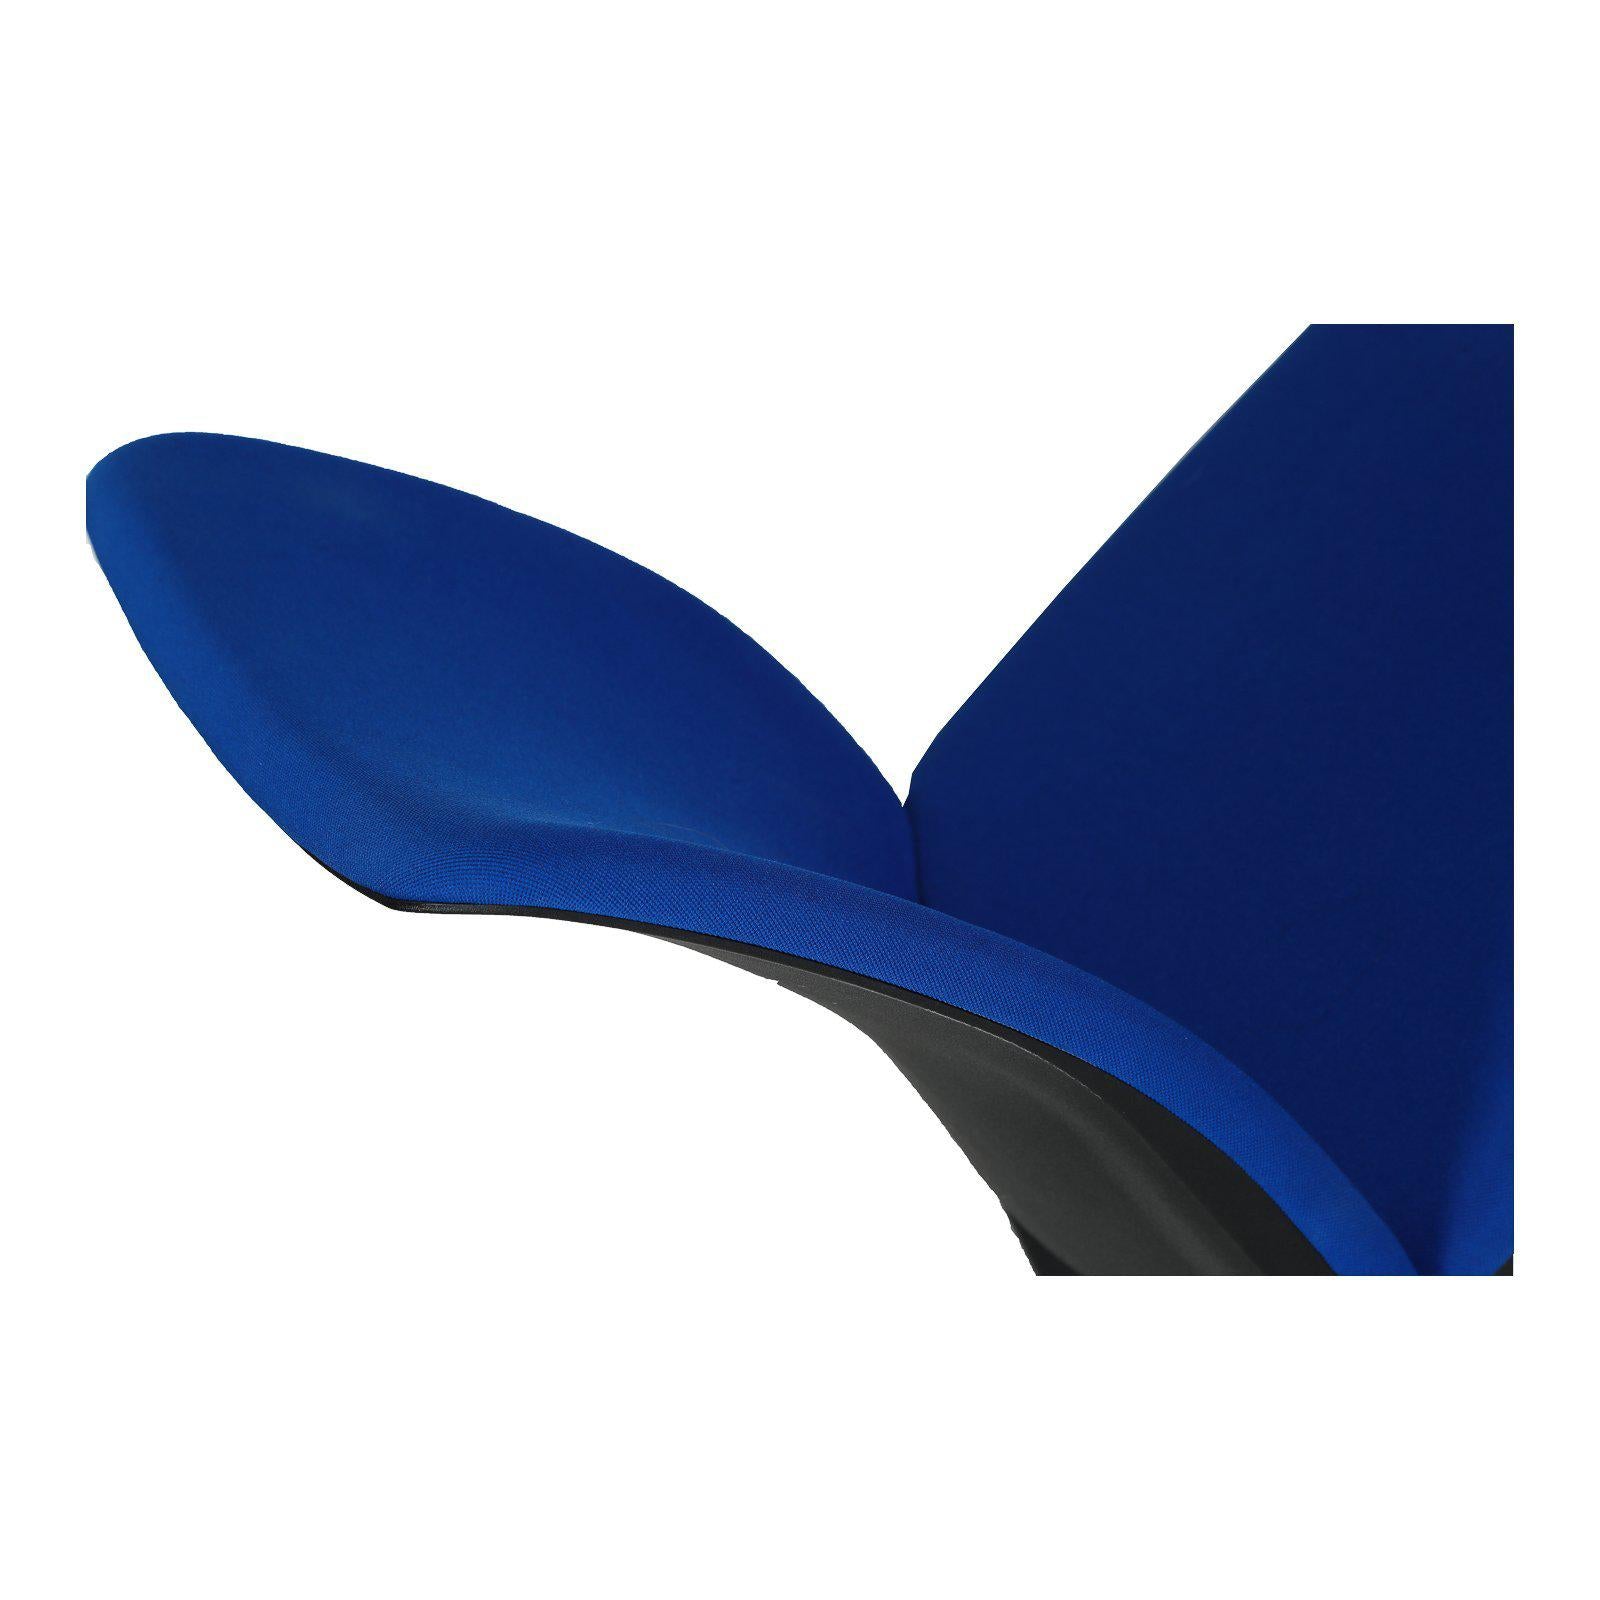 Chaise de réunion Steelcase occasion - Bleu - 48 x 40 x 92cm-Bluedigo